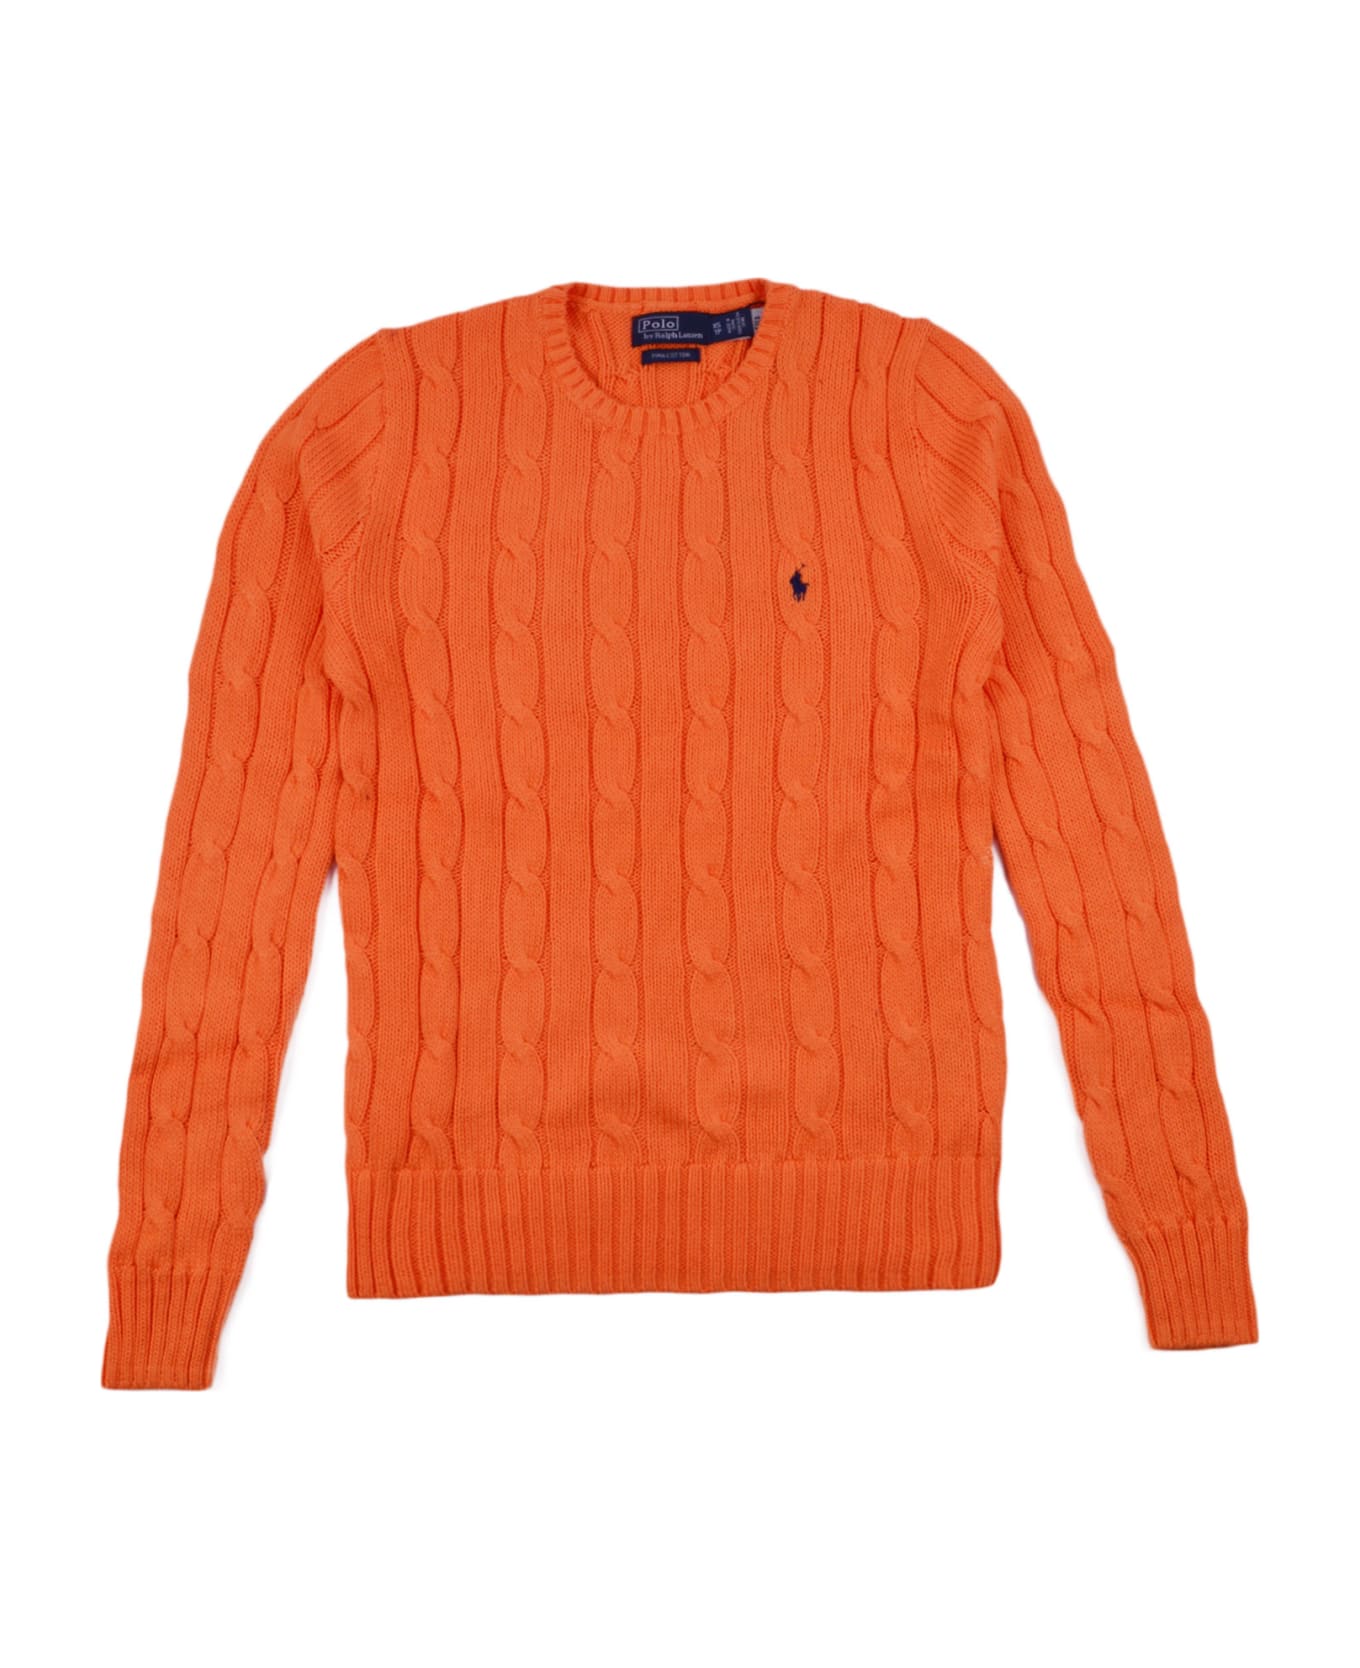 Polo Ralph Lauren Sweater - Orange ニットウェア